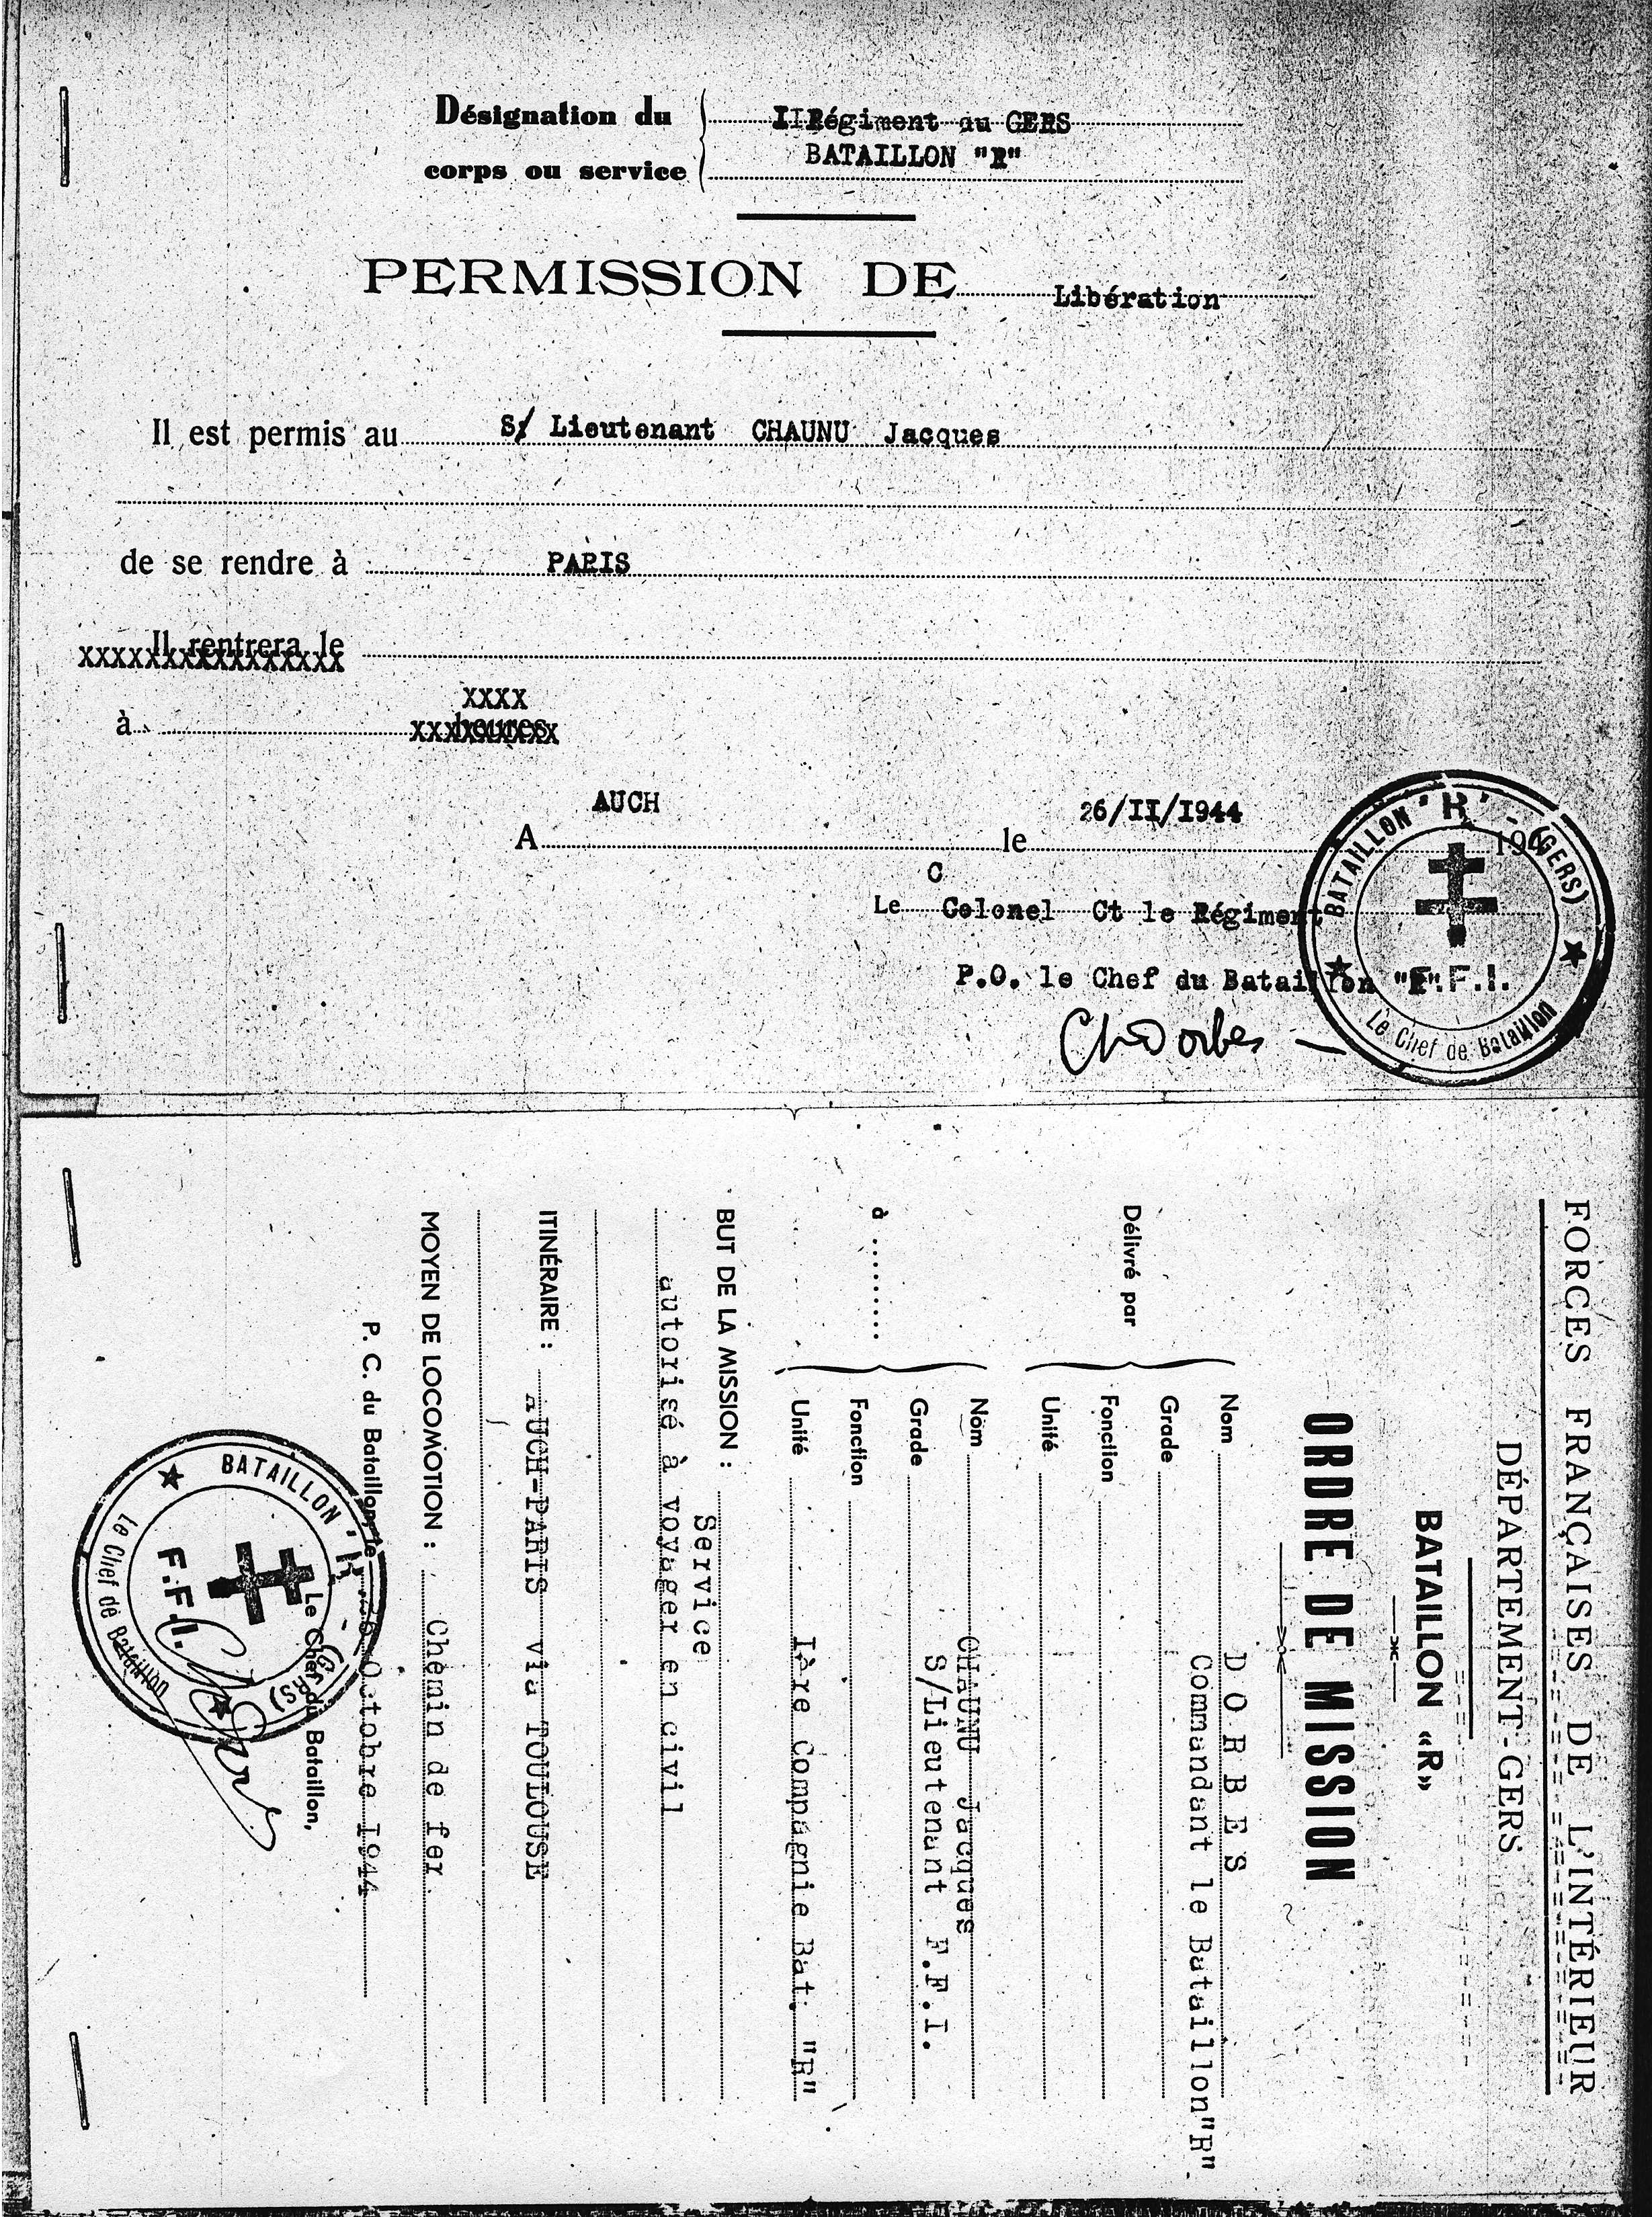 Permission de libération Novembre 1944 #2.JPG